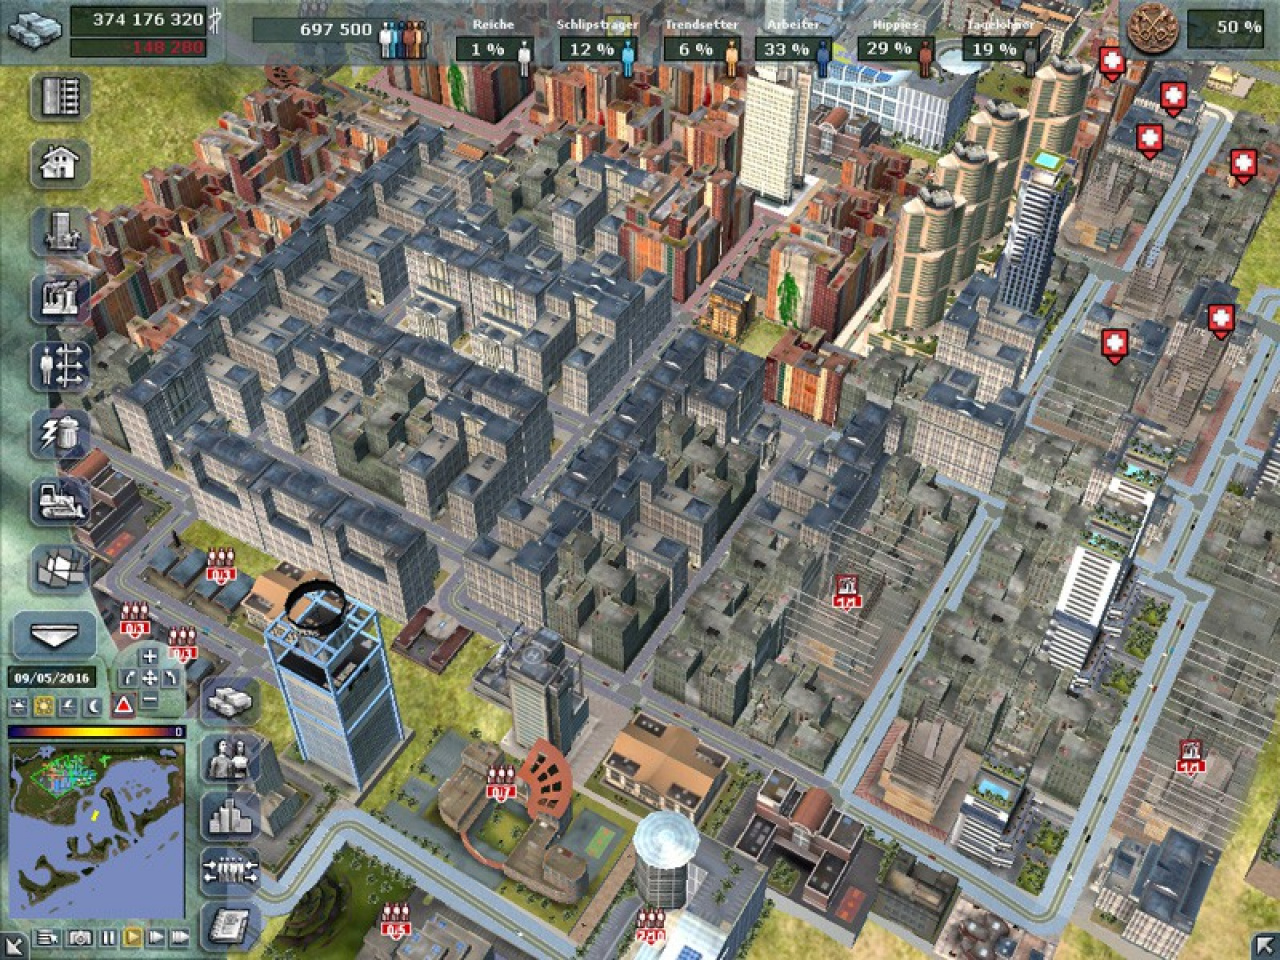 City Life | Анонсы и Обзоры Видео игр для PC, PS4, Xbox и мобильных платформ